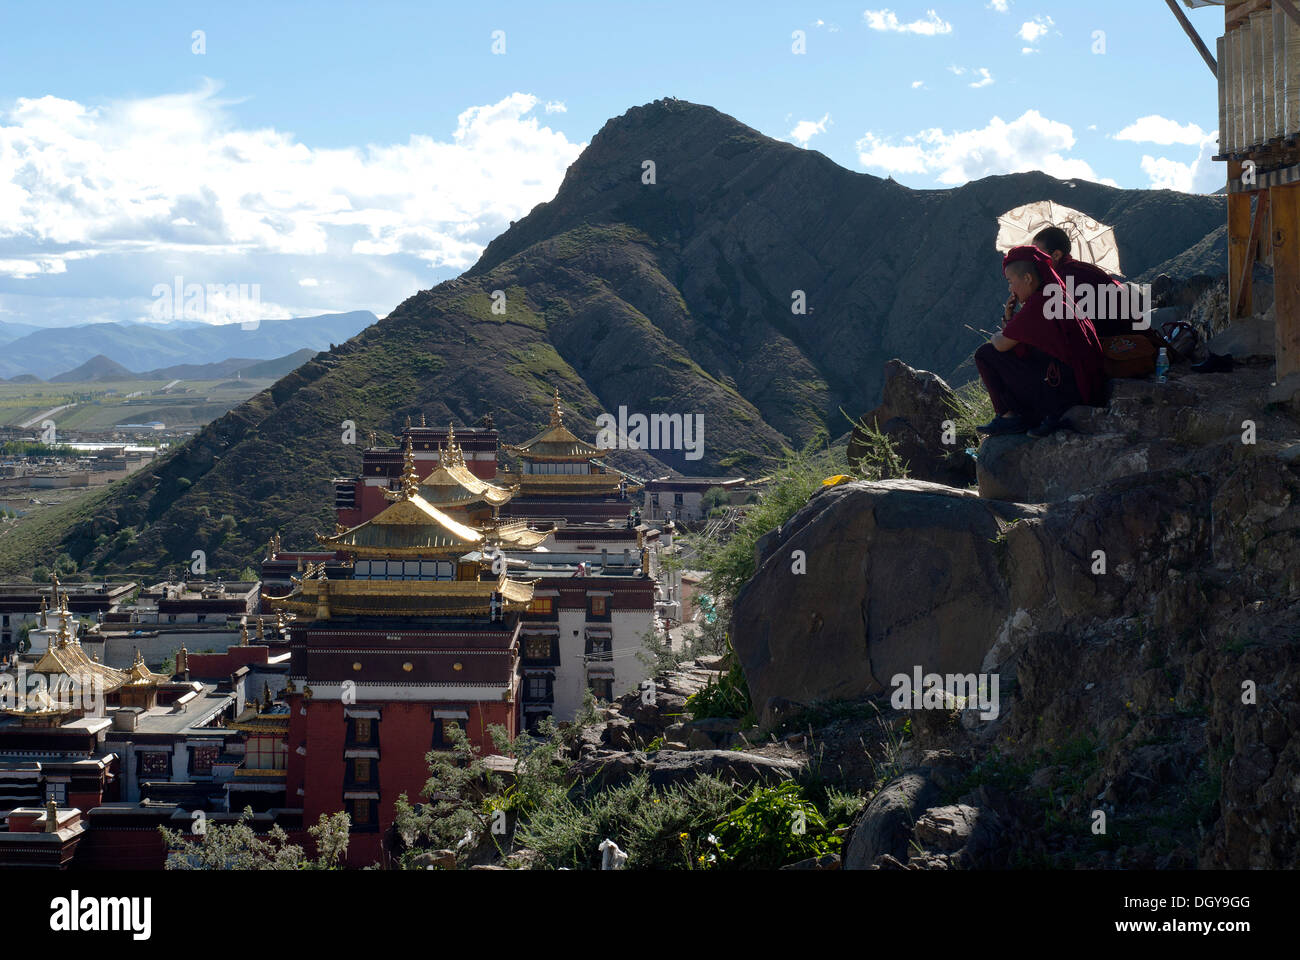 Le monache tibetani in appoggio su un percorso circolare di Kora pellegrinaggio, sopra i tetti del monastero di Tashilunpo, Shigatse Foto Stock